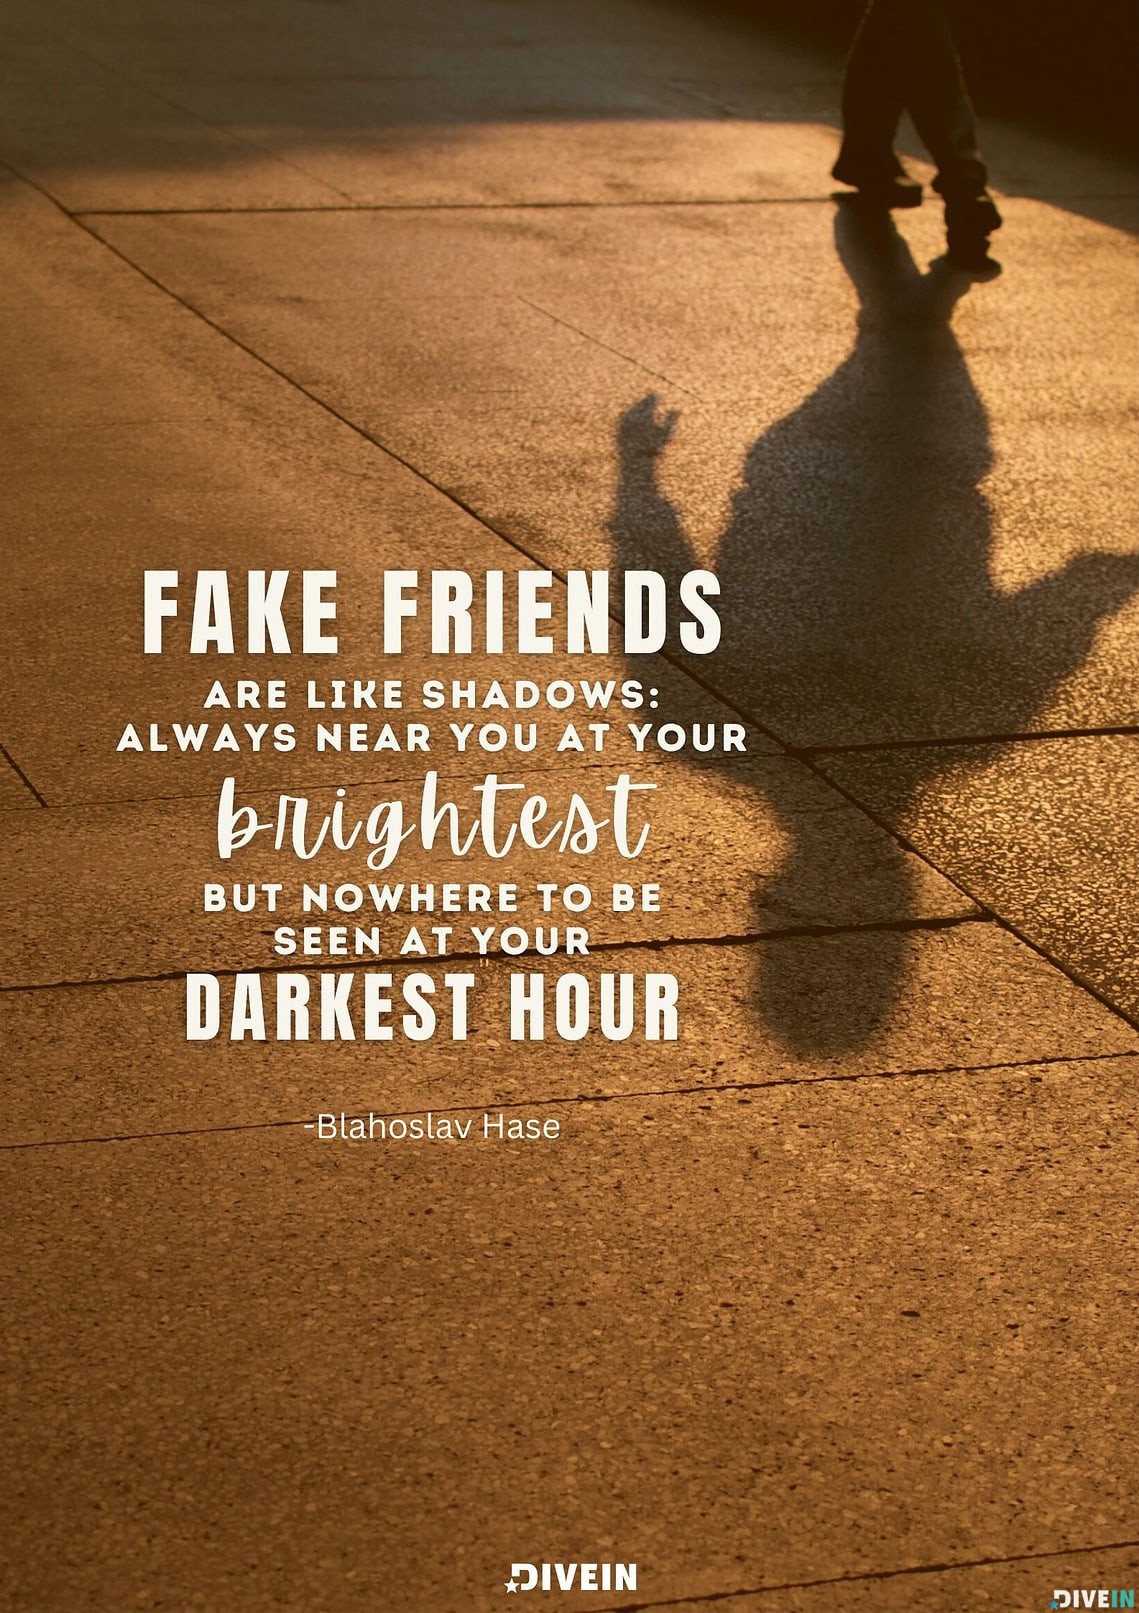 125 cytatów o fałszywych przyjaciołach i prawdziwych przyjaciołach